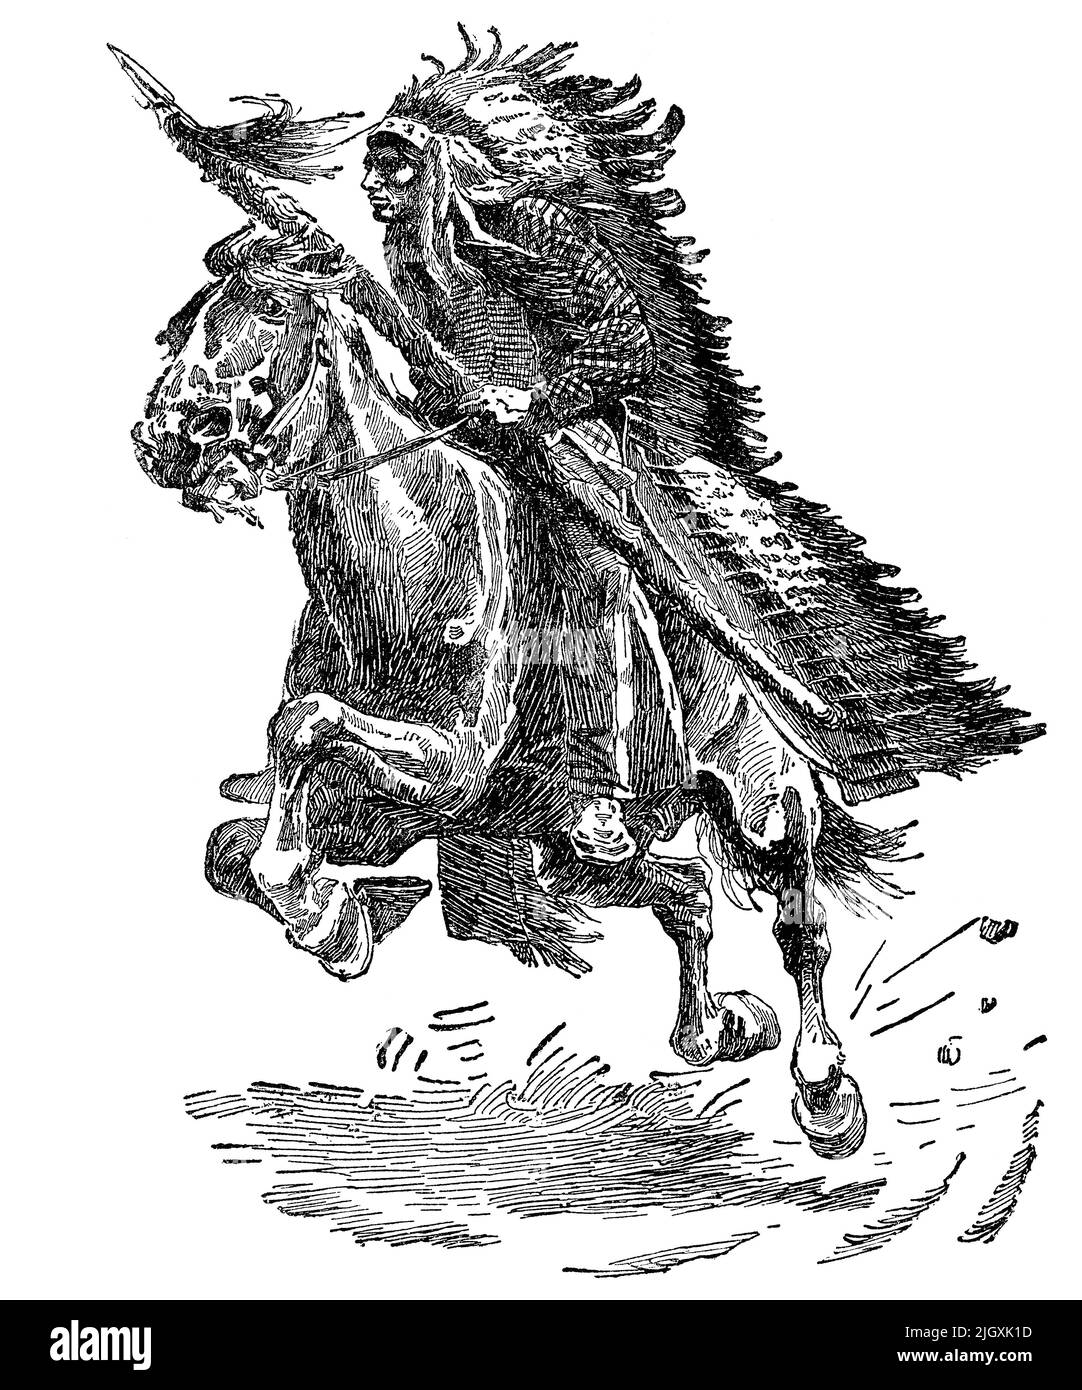 Grabado de la era victoriana de un guerrero nativo americano a caballo. Foto de stock